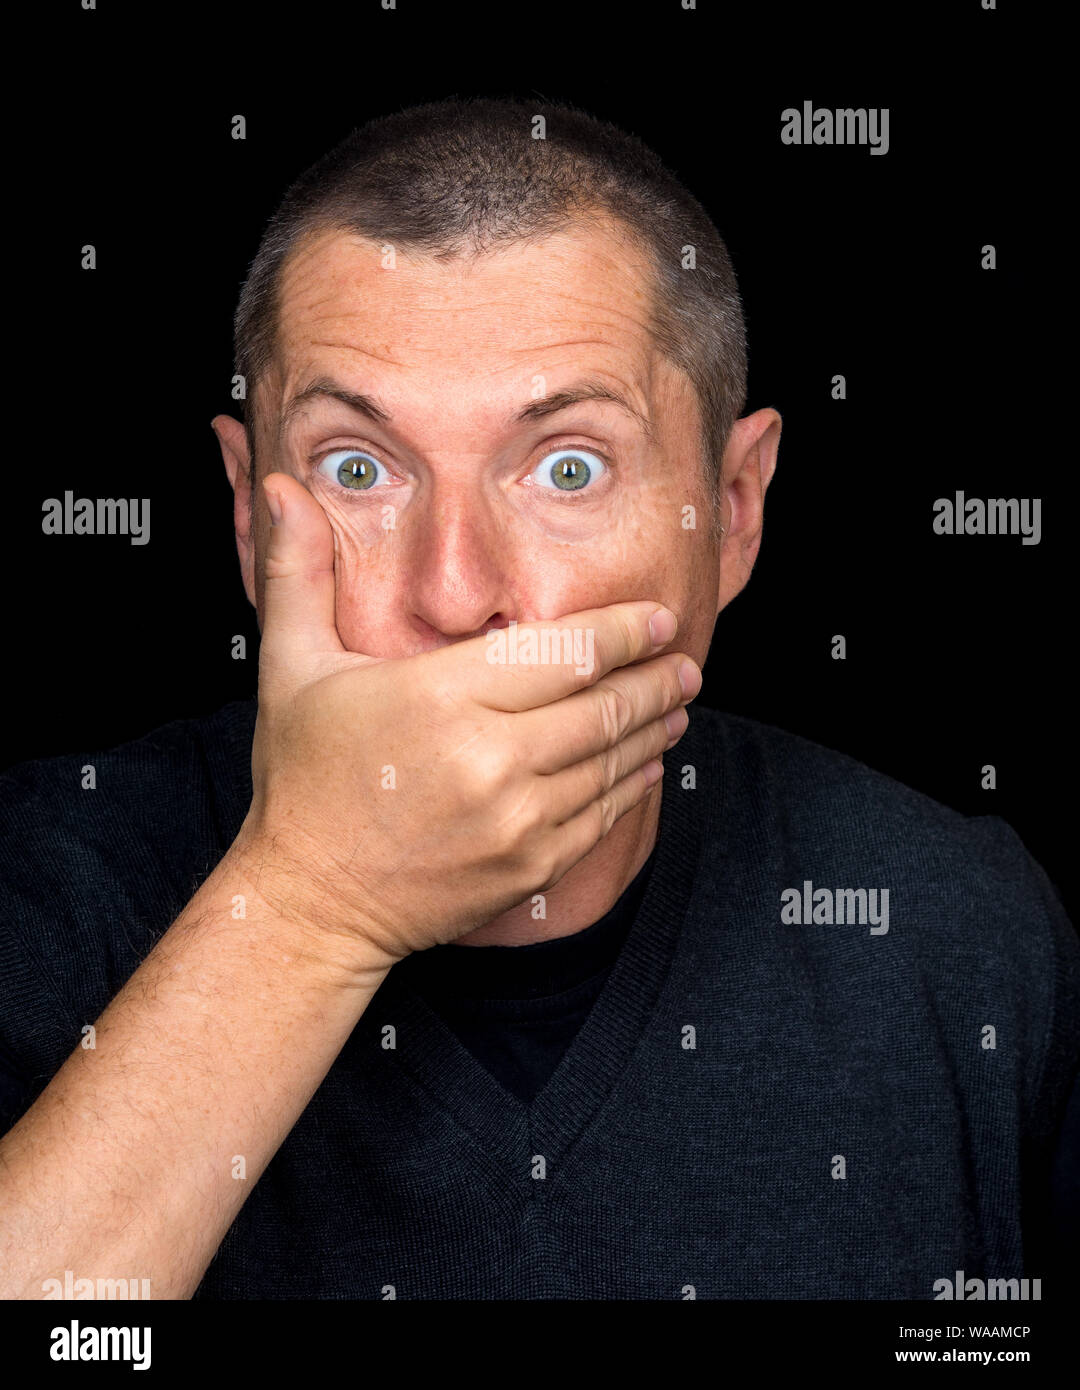 Ritratto di un uomo con emozioni grottesche su sfondo nero Foto Stock